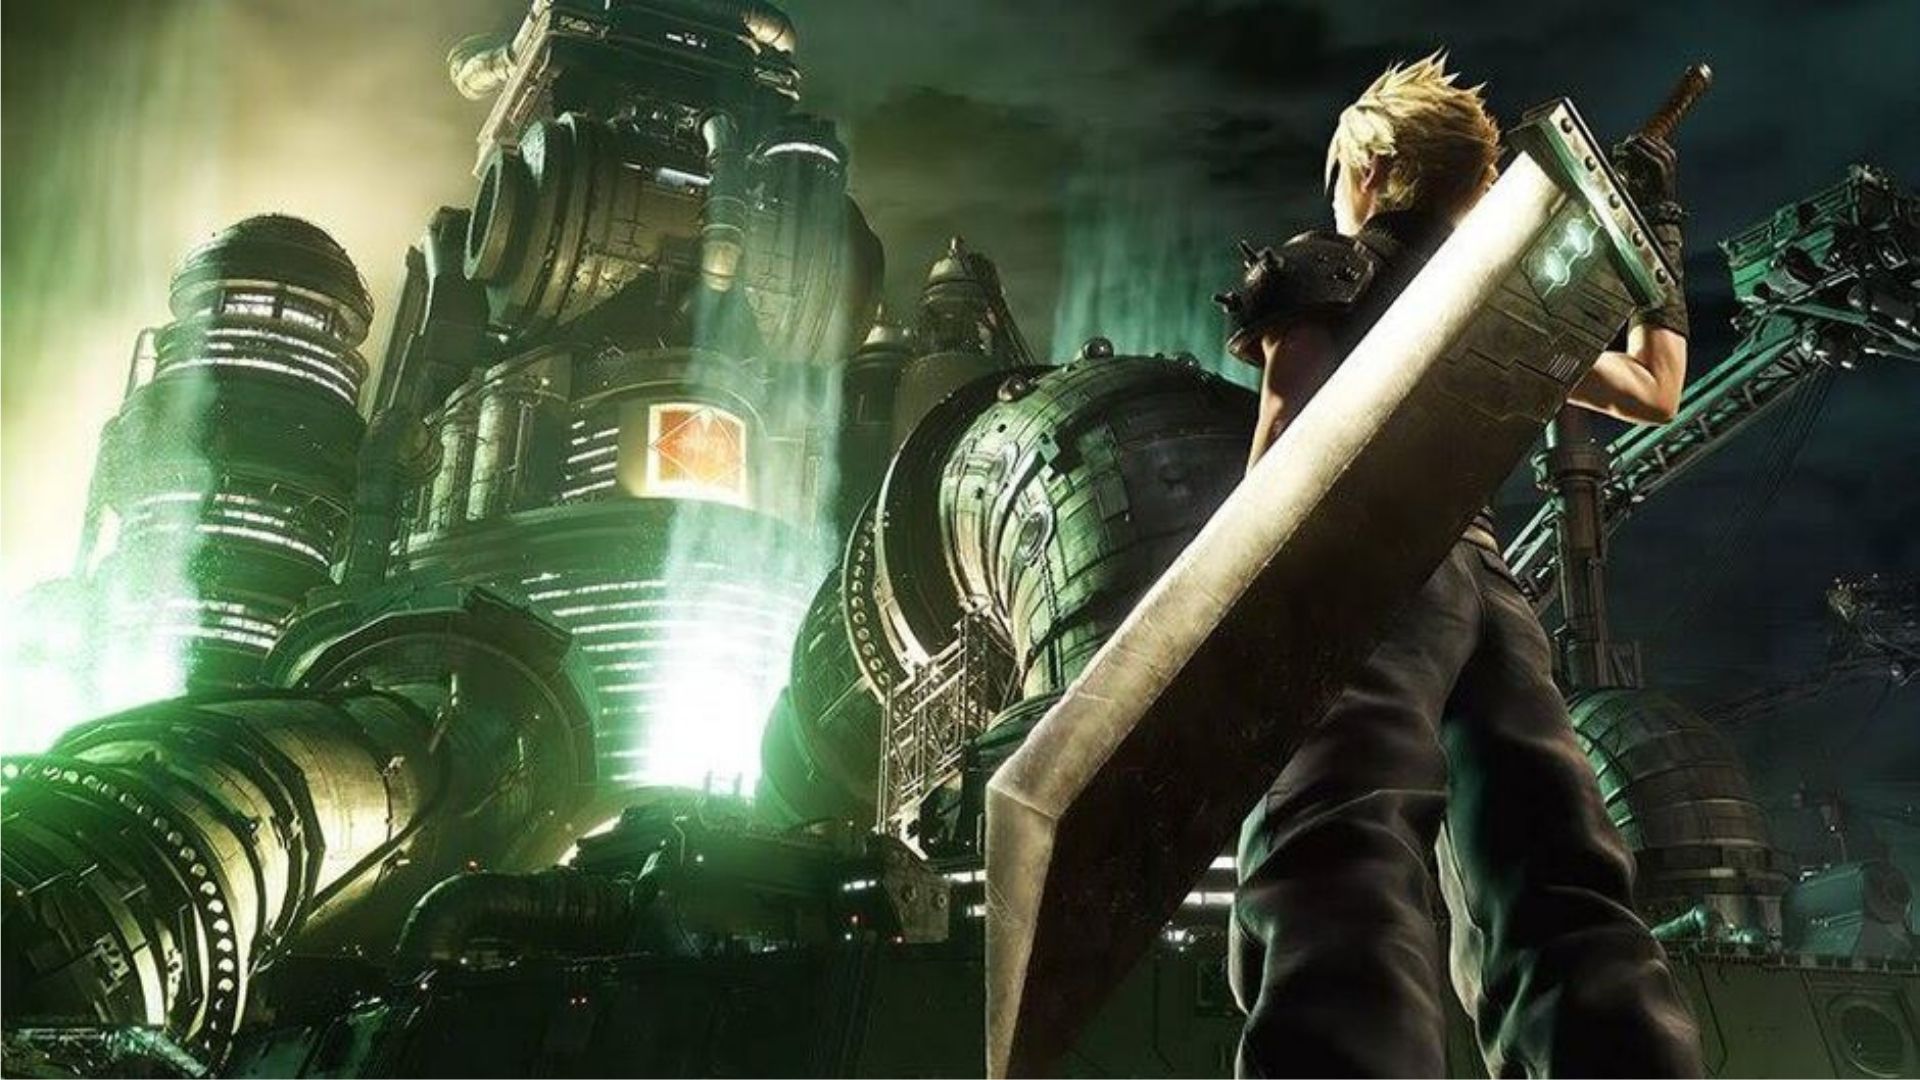 ซีรีส์ Final Fantasy มียอดขายทั้งแบบแผ่นและดิจิทัลเกินกว่า 173 ล้านยูนิตทั่วโลก